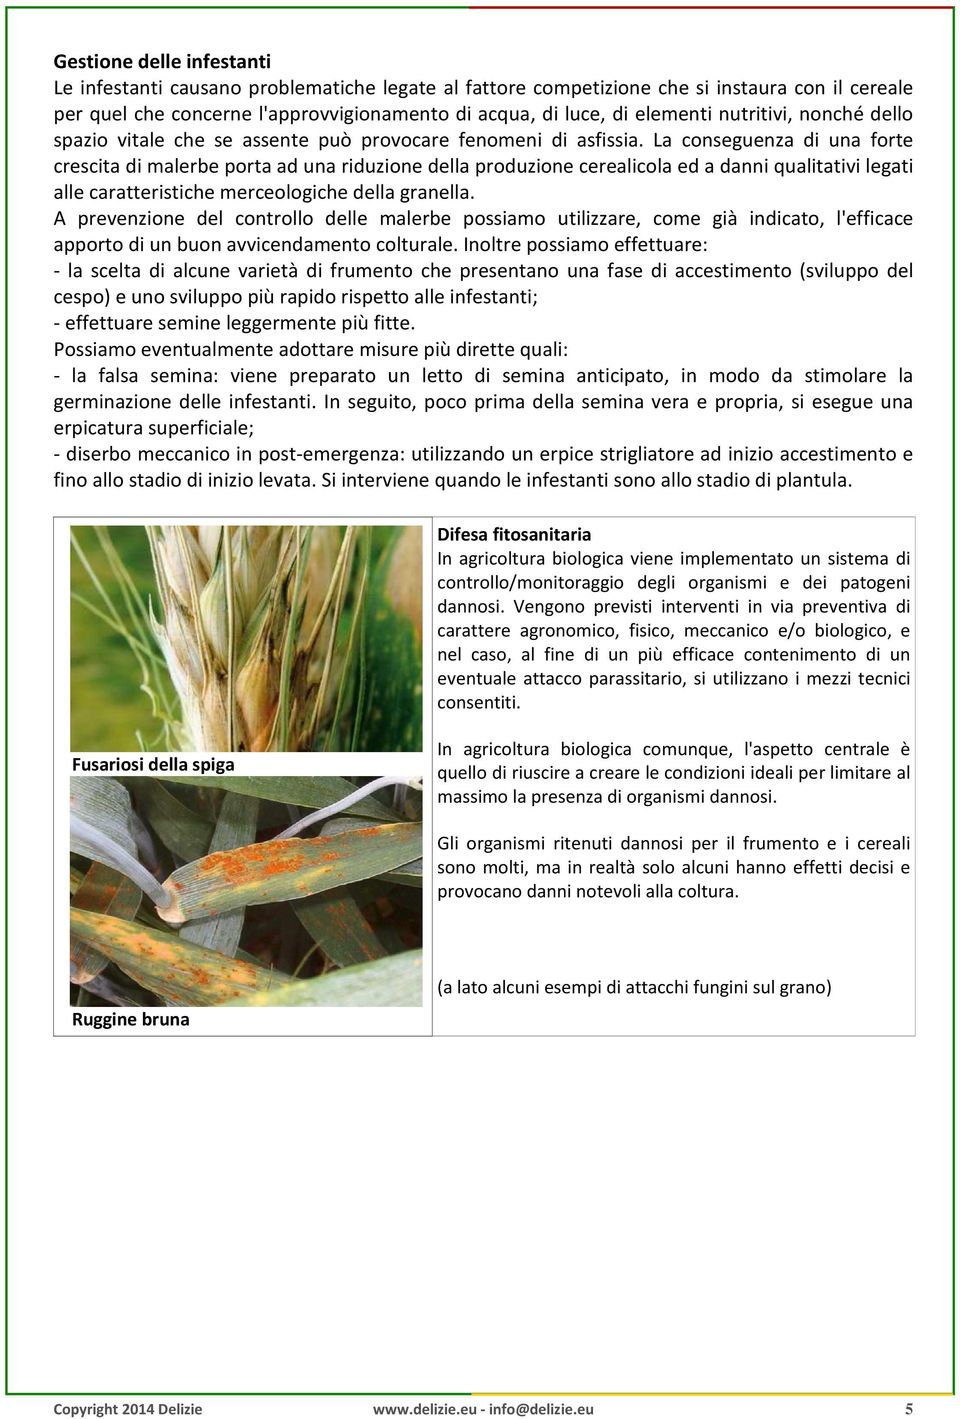 La conseguenza di una forte crescita di malerbe porta ad una riduzione della produzione cerealicola ed a danni qualitativi legati alle caratteristiche merceologiche della granella.